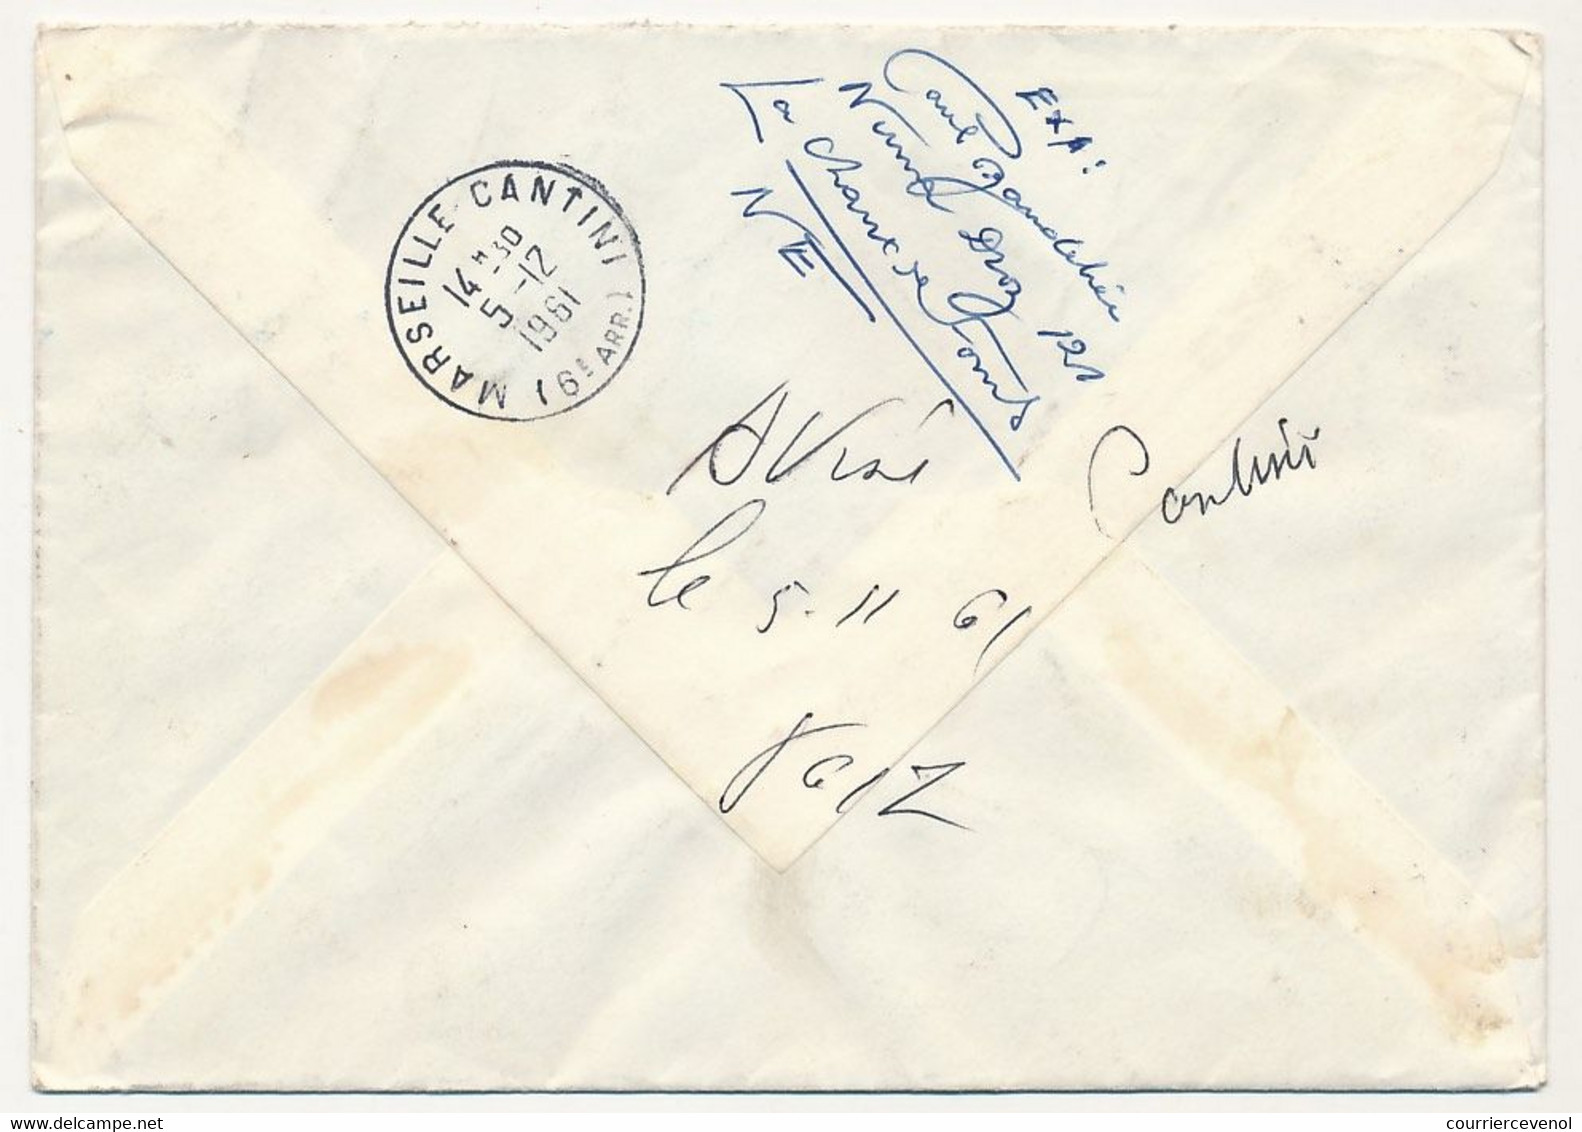 SUISSE - Enveloppe Recommandée Affr Série Pro Juventute 1961 - Obl La Chaux De Fonds - 4/12/1961 - Covers & Documents